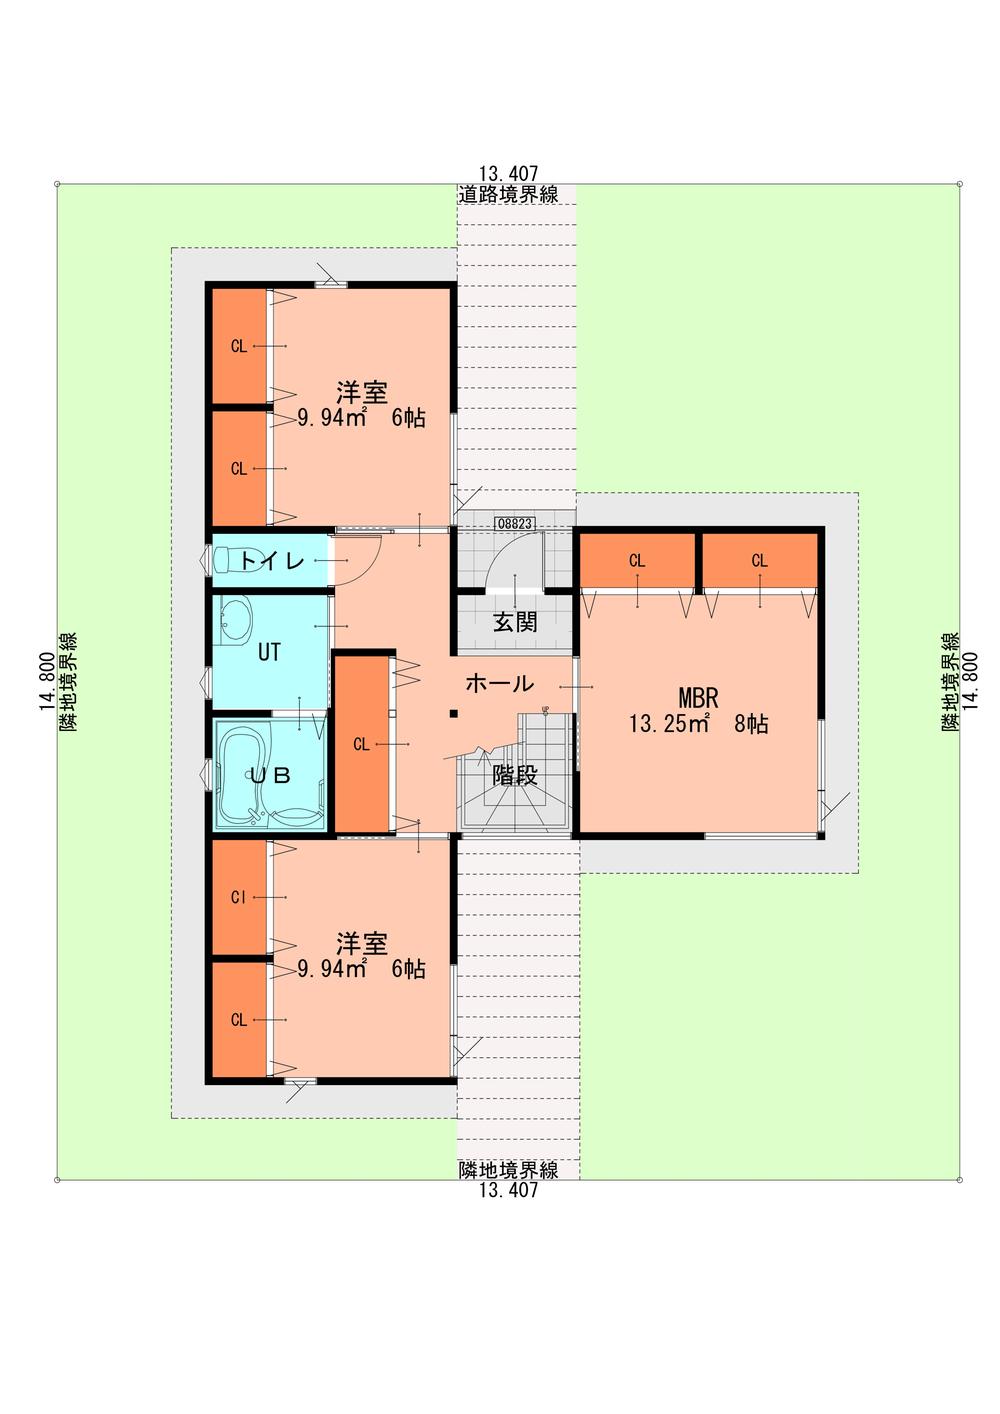 Building plan example (floor plan). Building Plan Example (1-floor plan view)